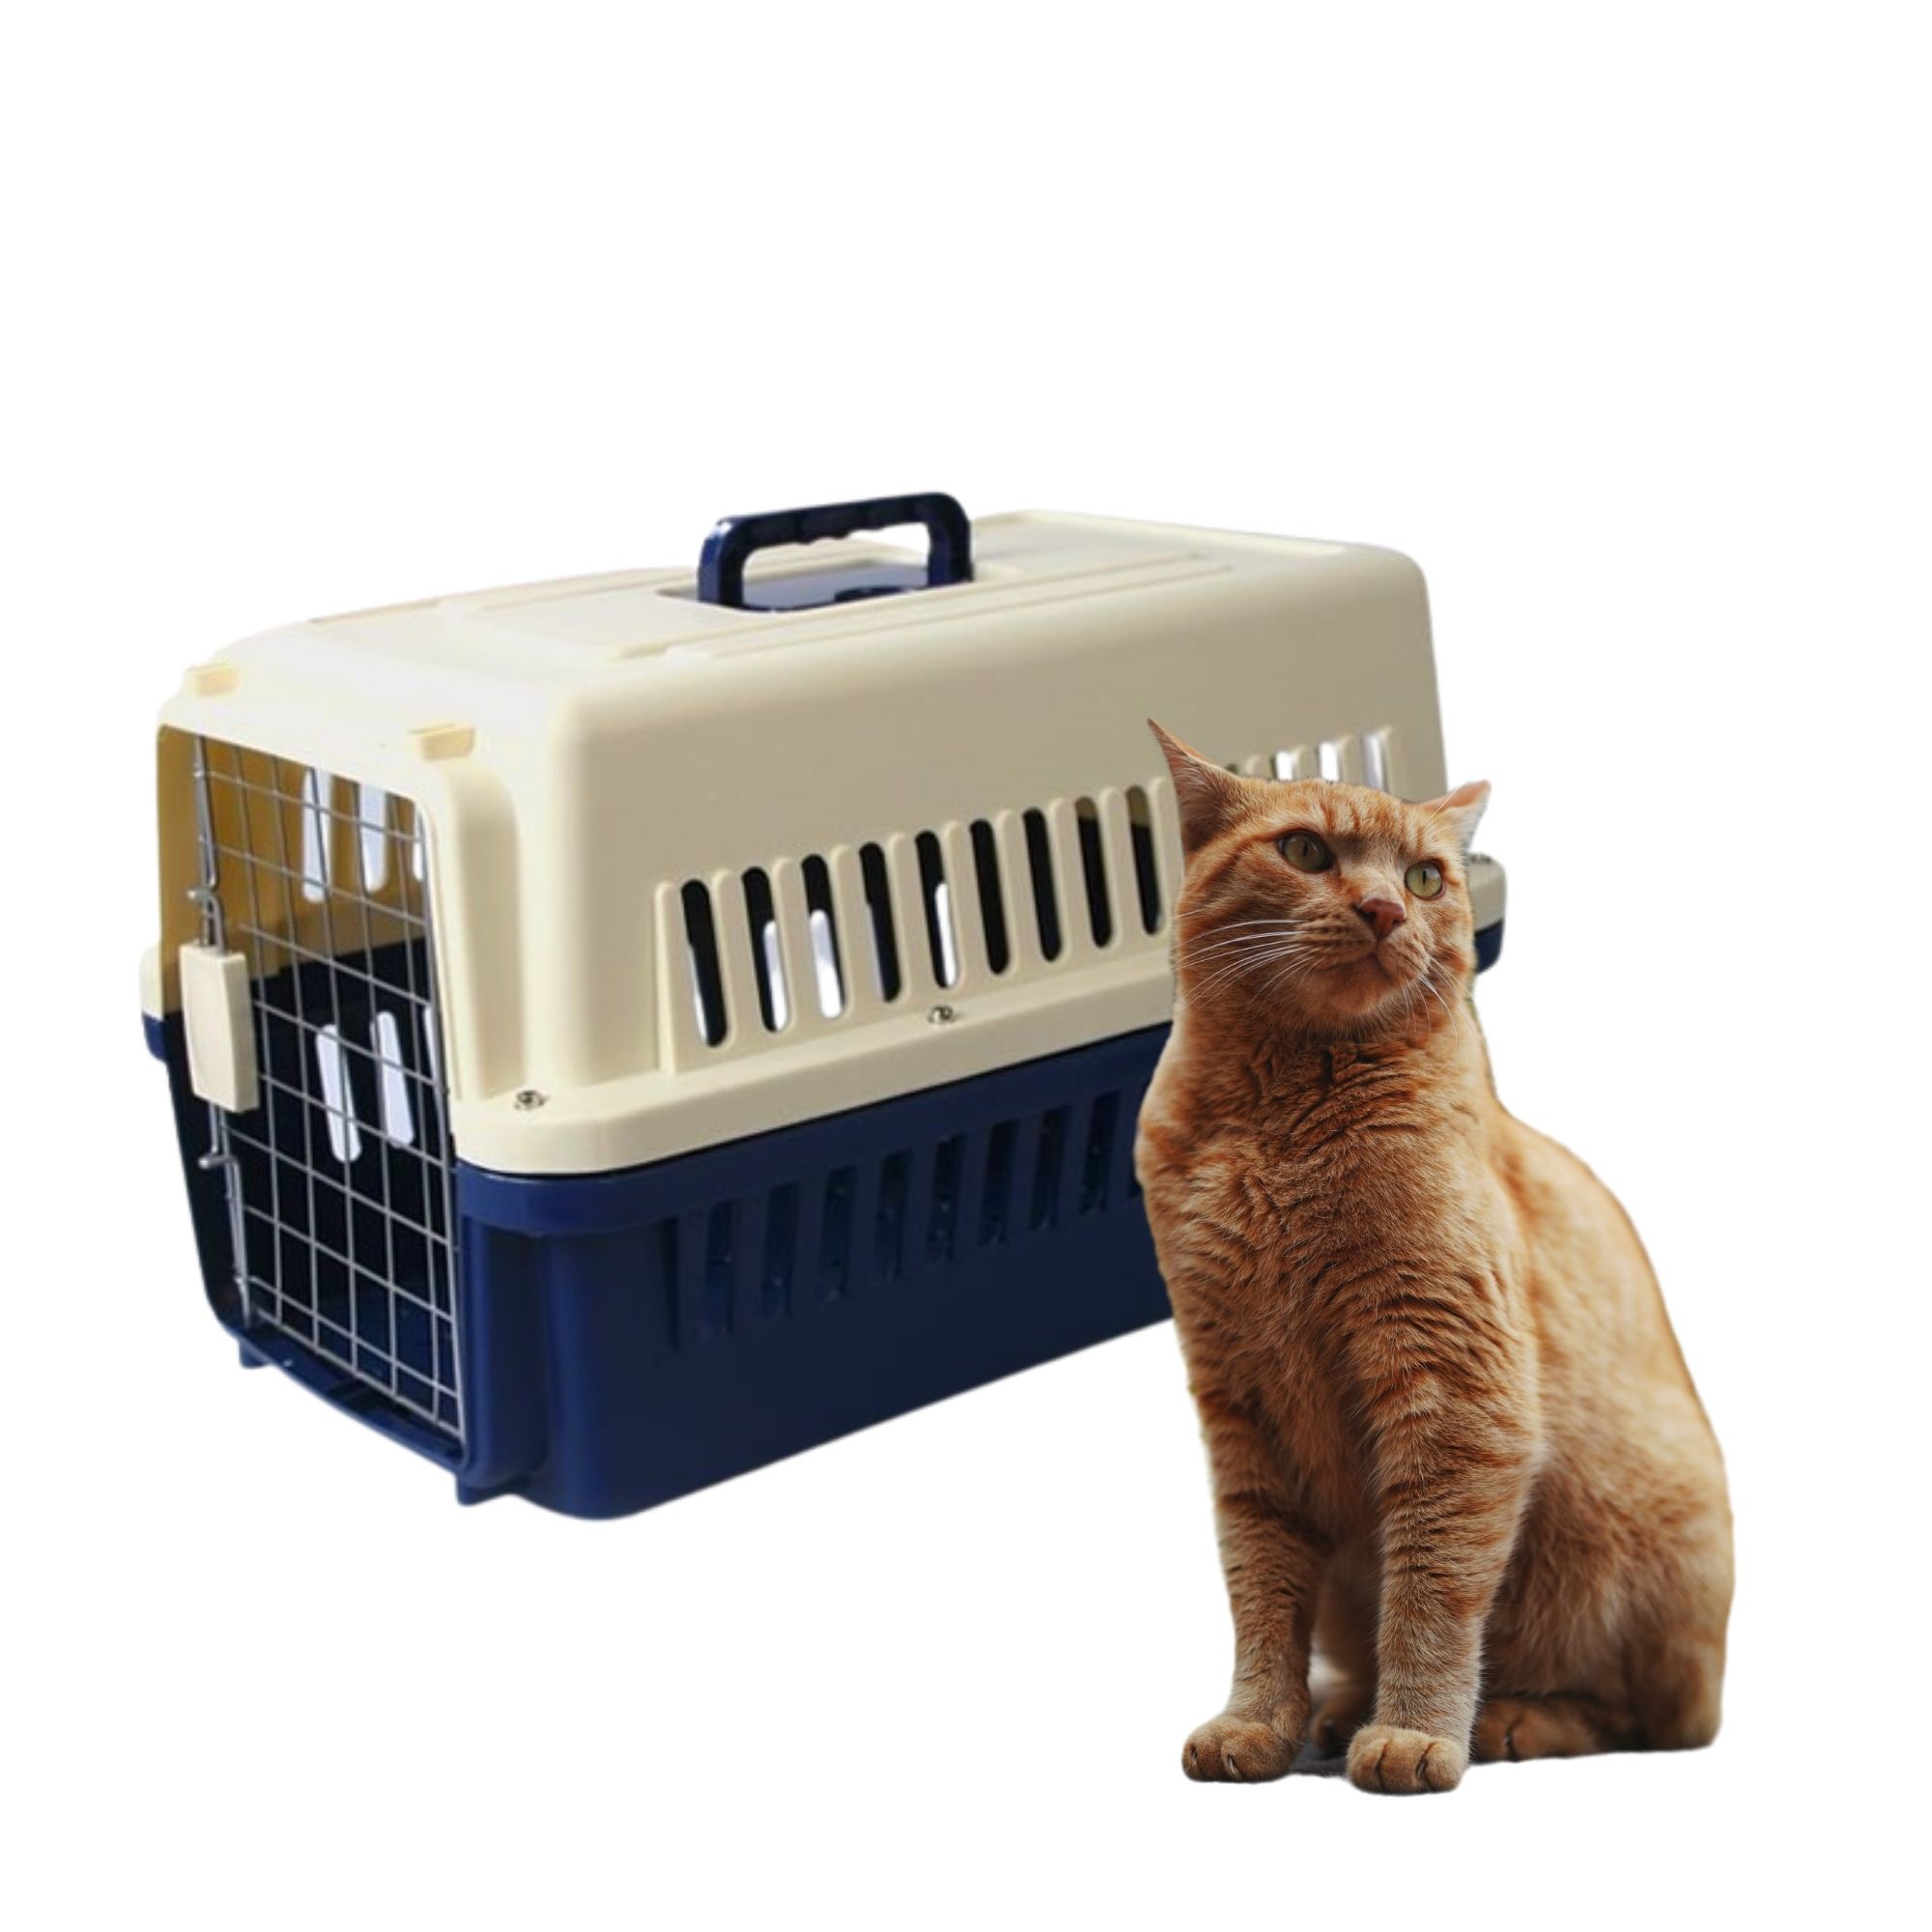 Caisse de transport chien et chat - taille M - Voyage Avion Voiture - IATA